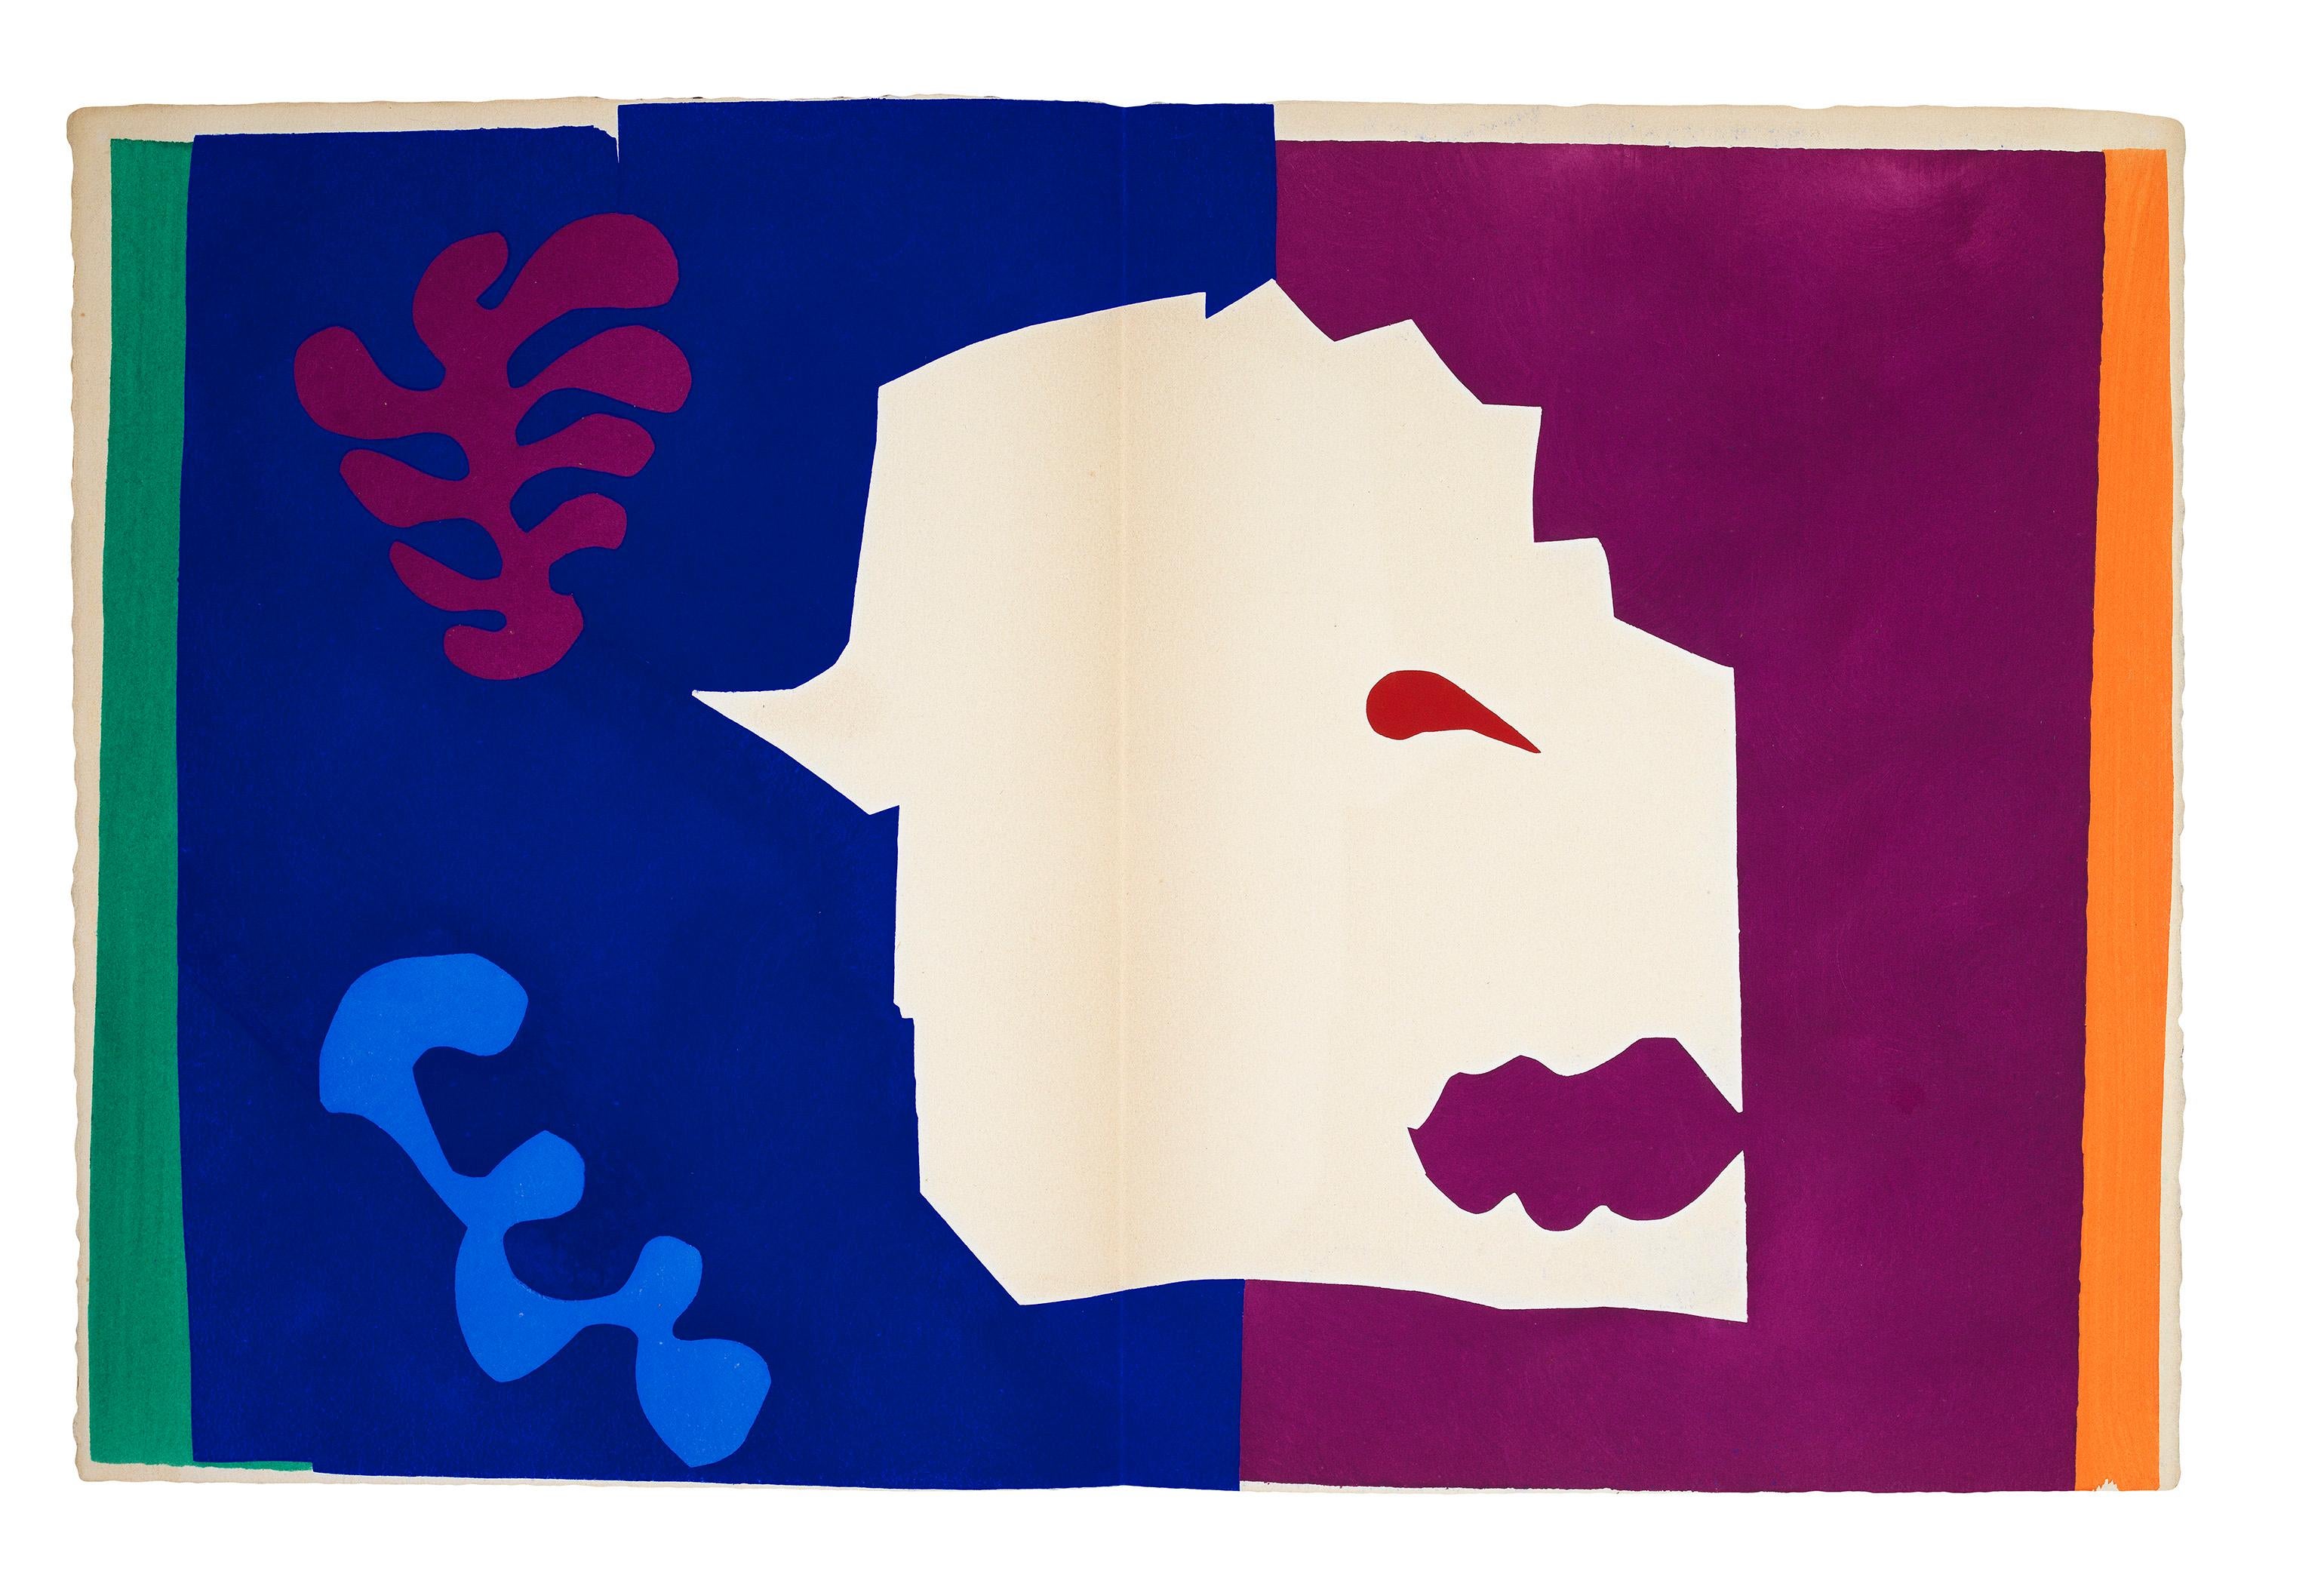 Pochoir in Farben gedruckt, 1947. 
Aus: Jazz, Tafel VI. Aus der Buchausgabe von 270. 
Gedruckt auf Arches-Papier bei Edmond Vairel, Paris. 
Herausgegeben von Teriade, Paris. 
(Duthuit Livres 22).   